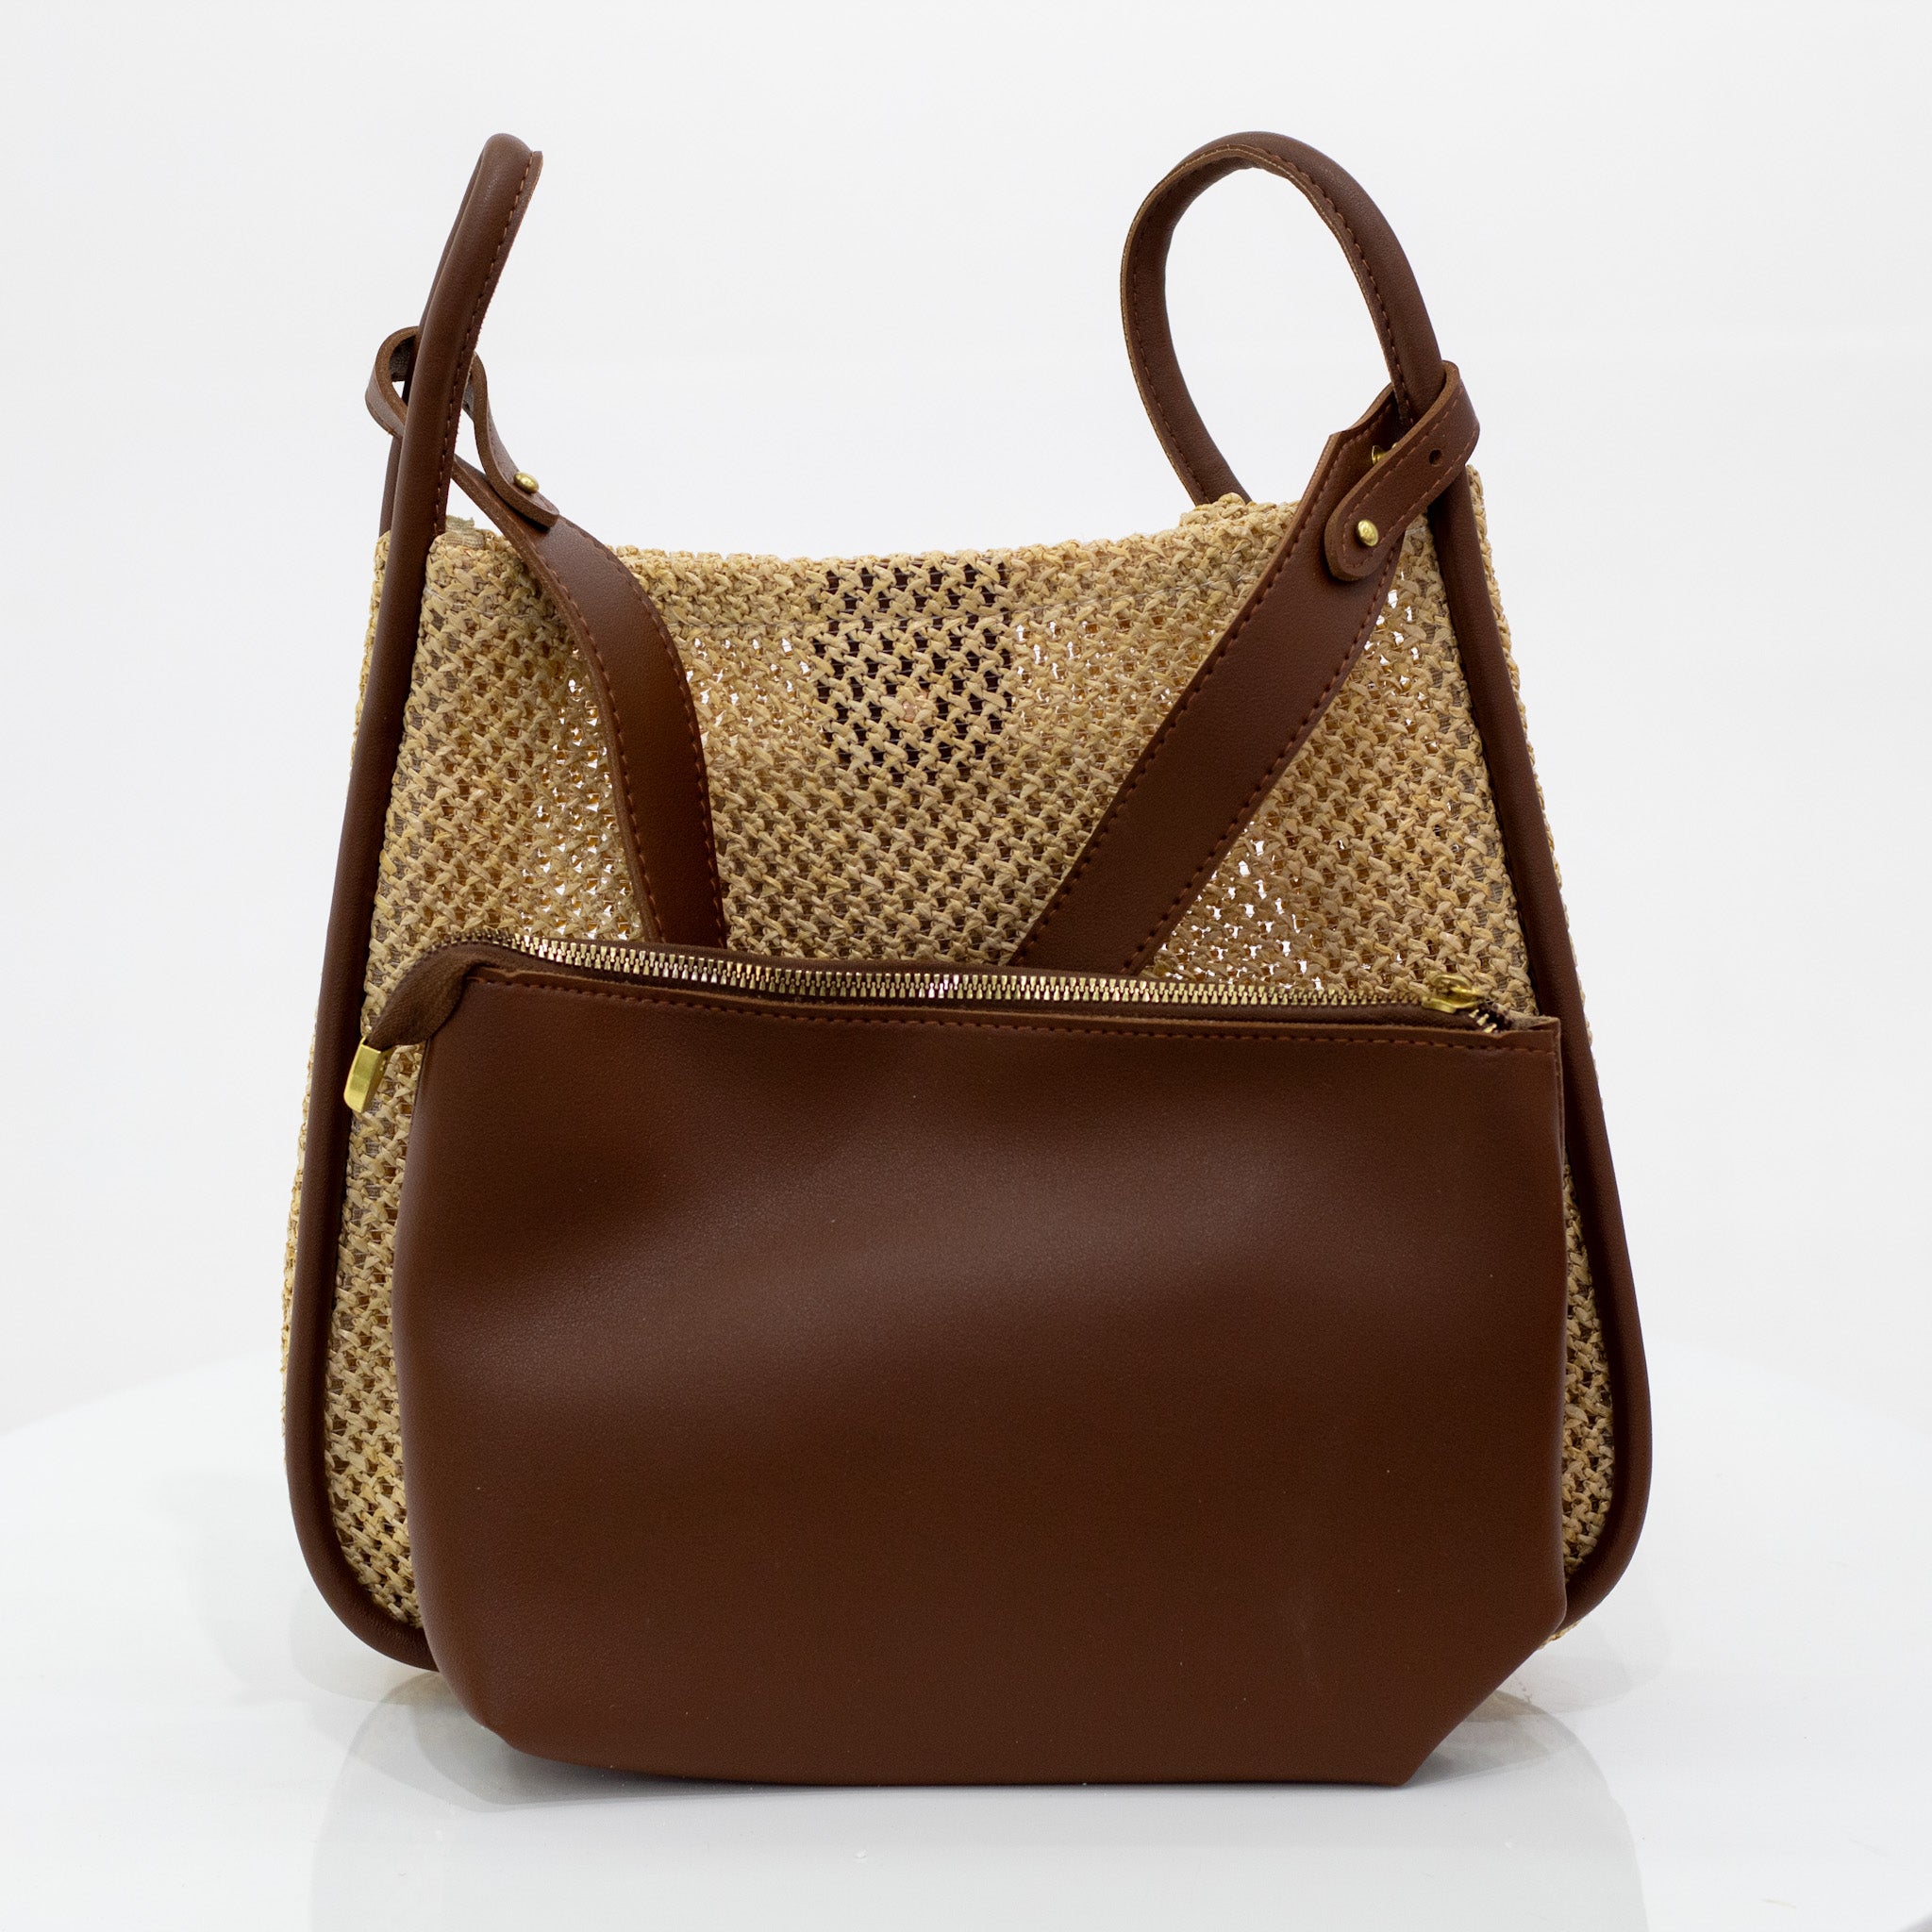 Liz & Co Purse Handbag Bag Shoulder Strap Faux Blue Snake Skin